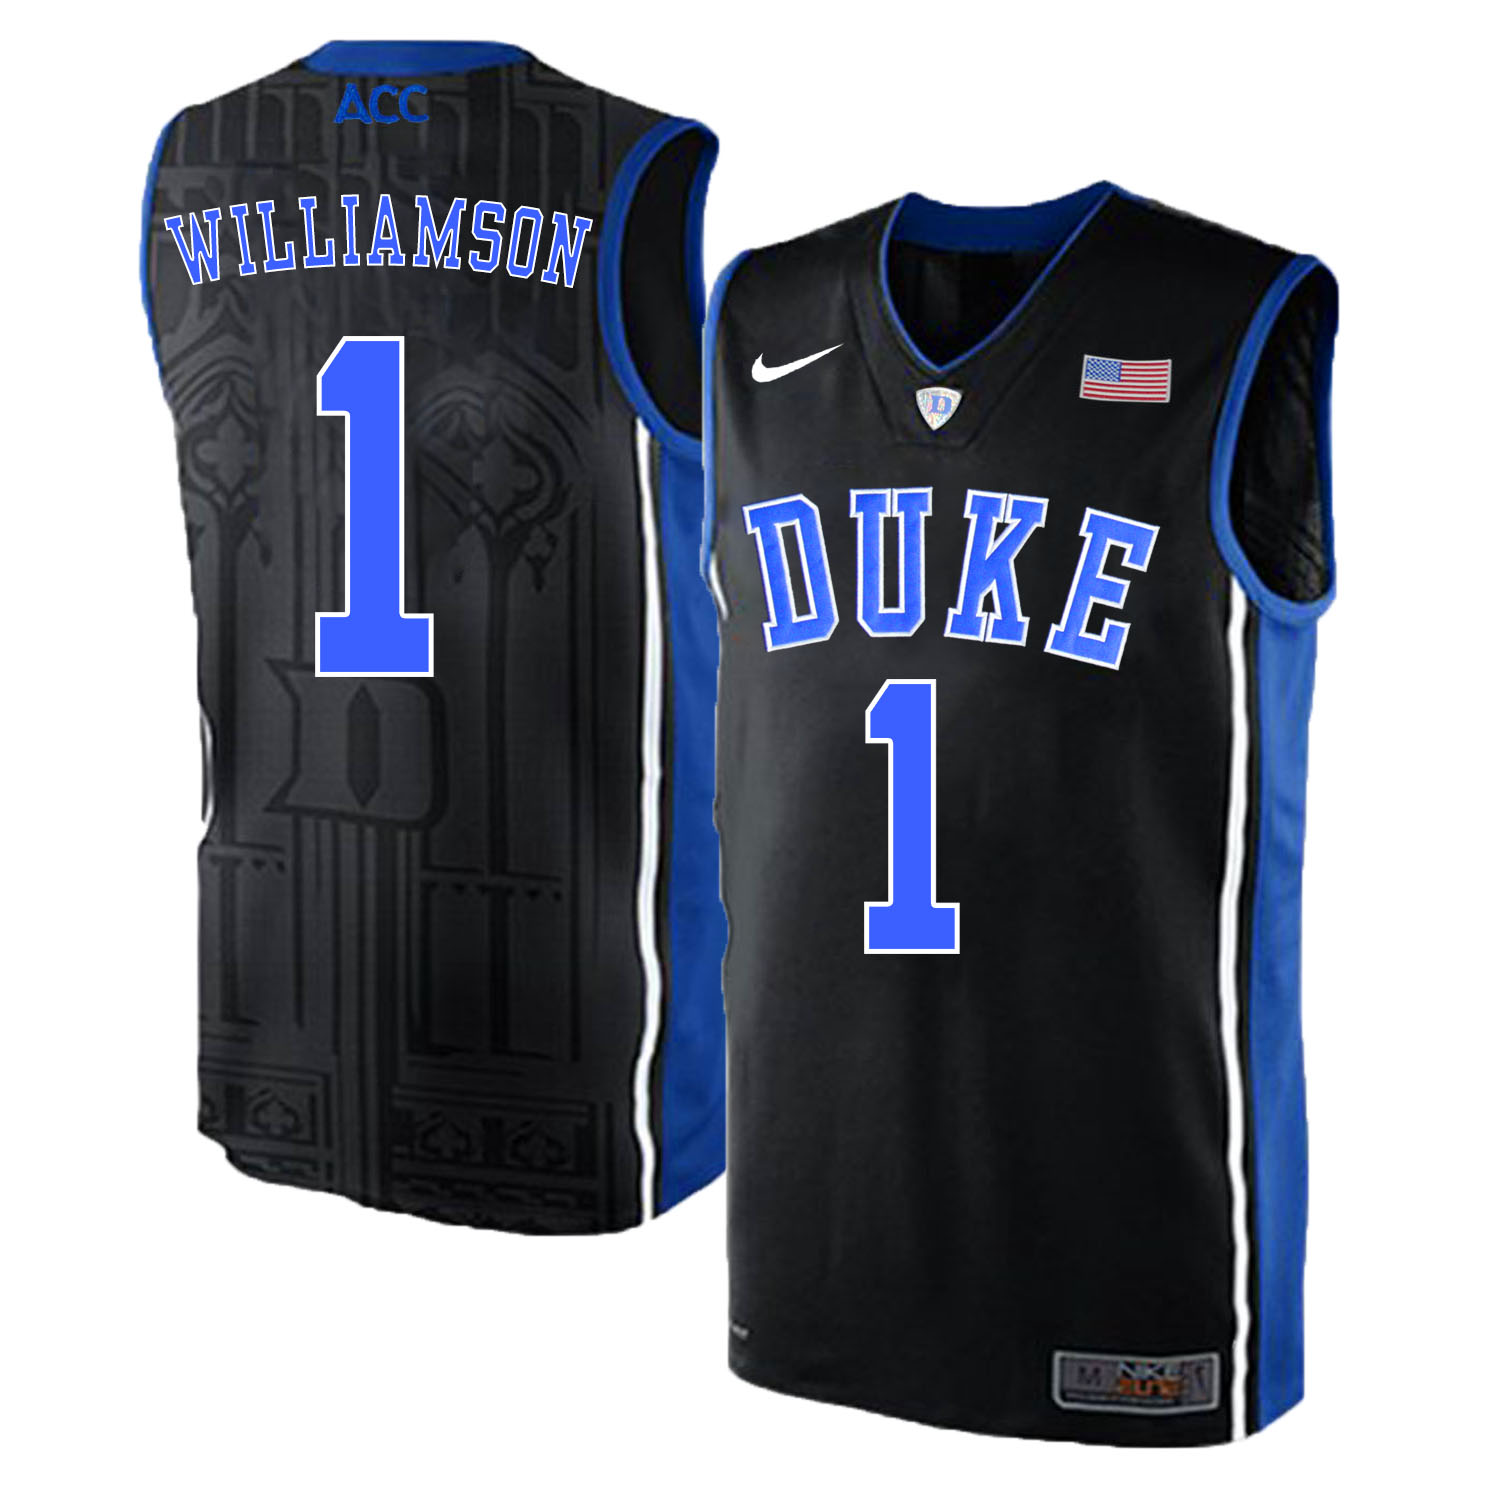 Duke Blue Devils 1 Zion Williamson Black Elite Nike College Basketabll Jersey